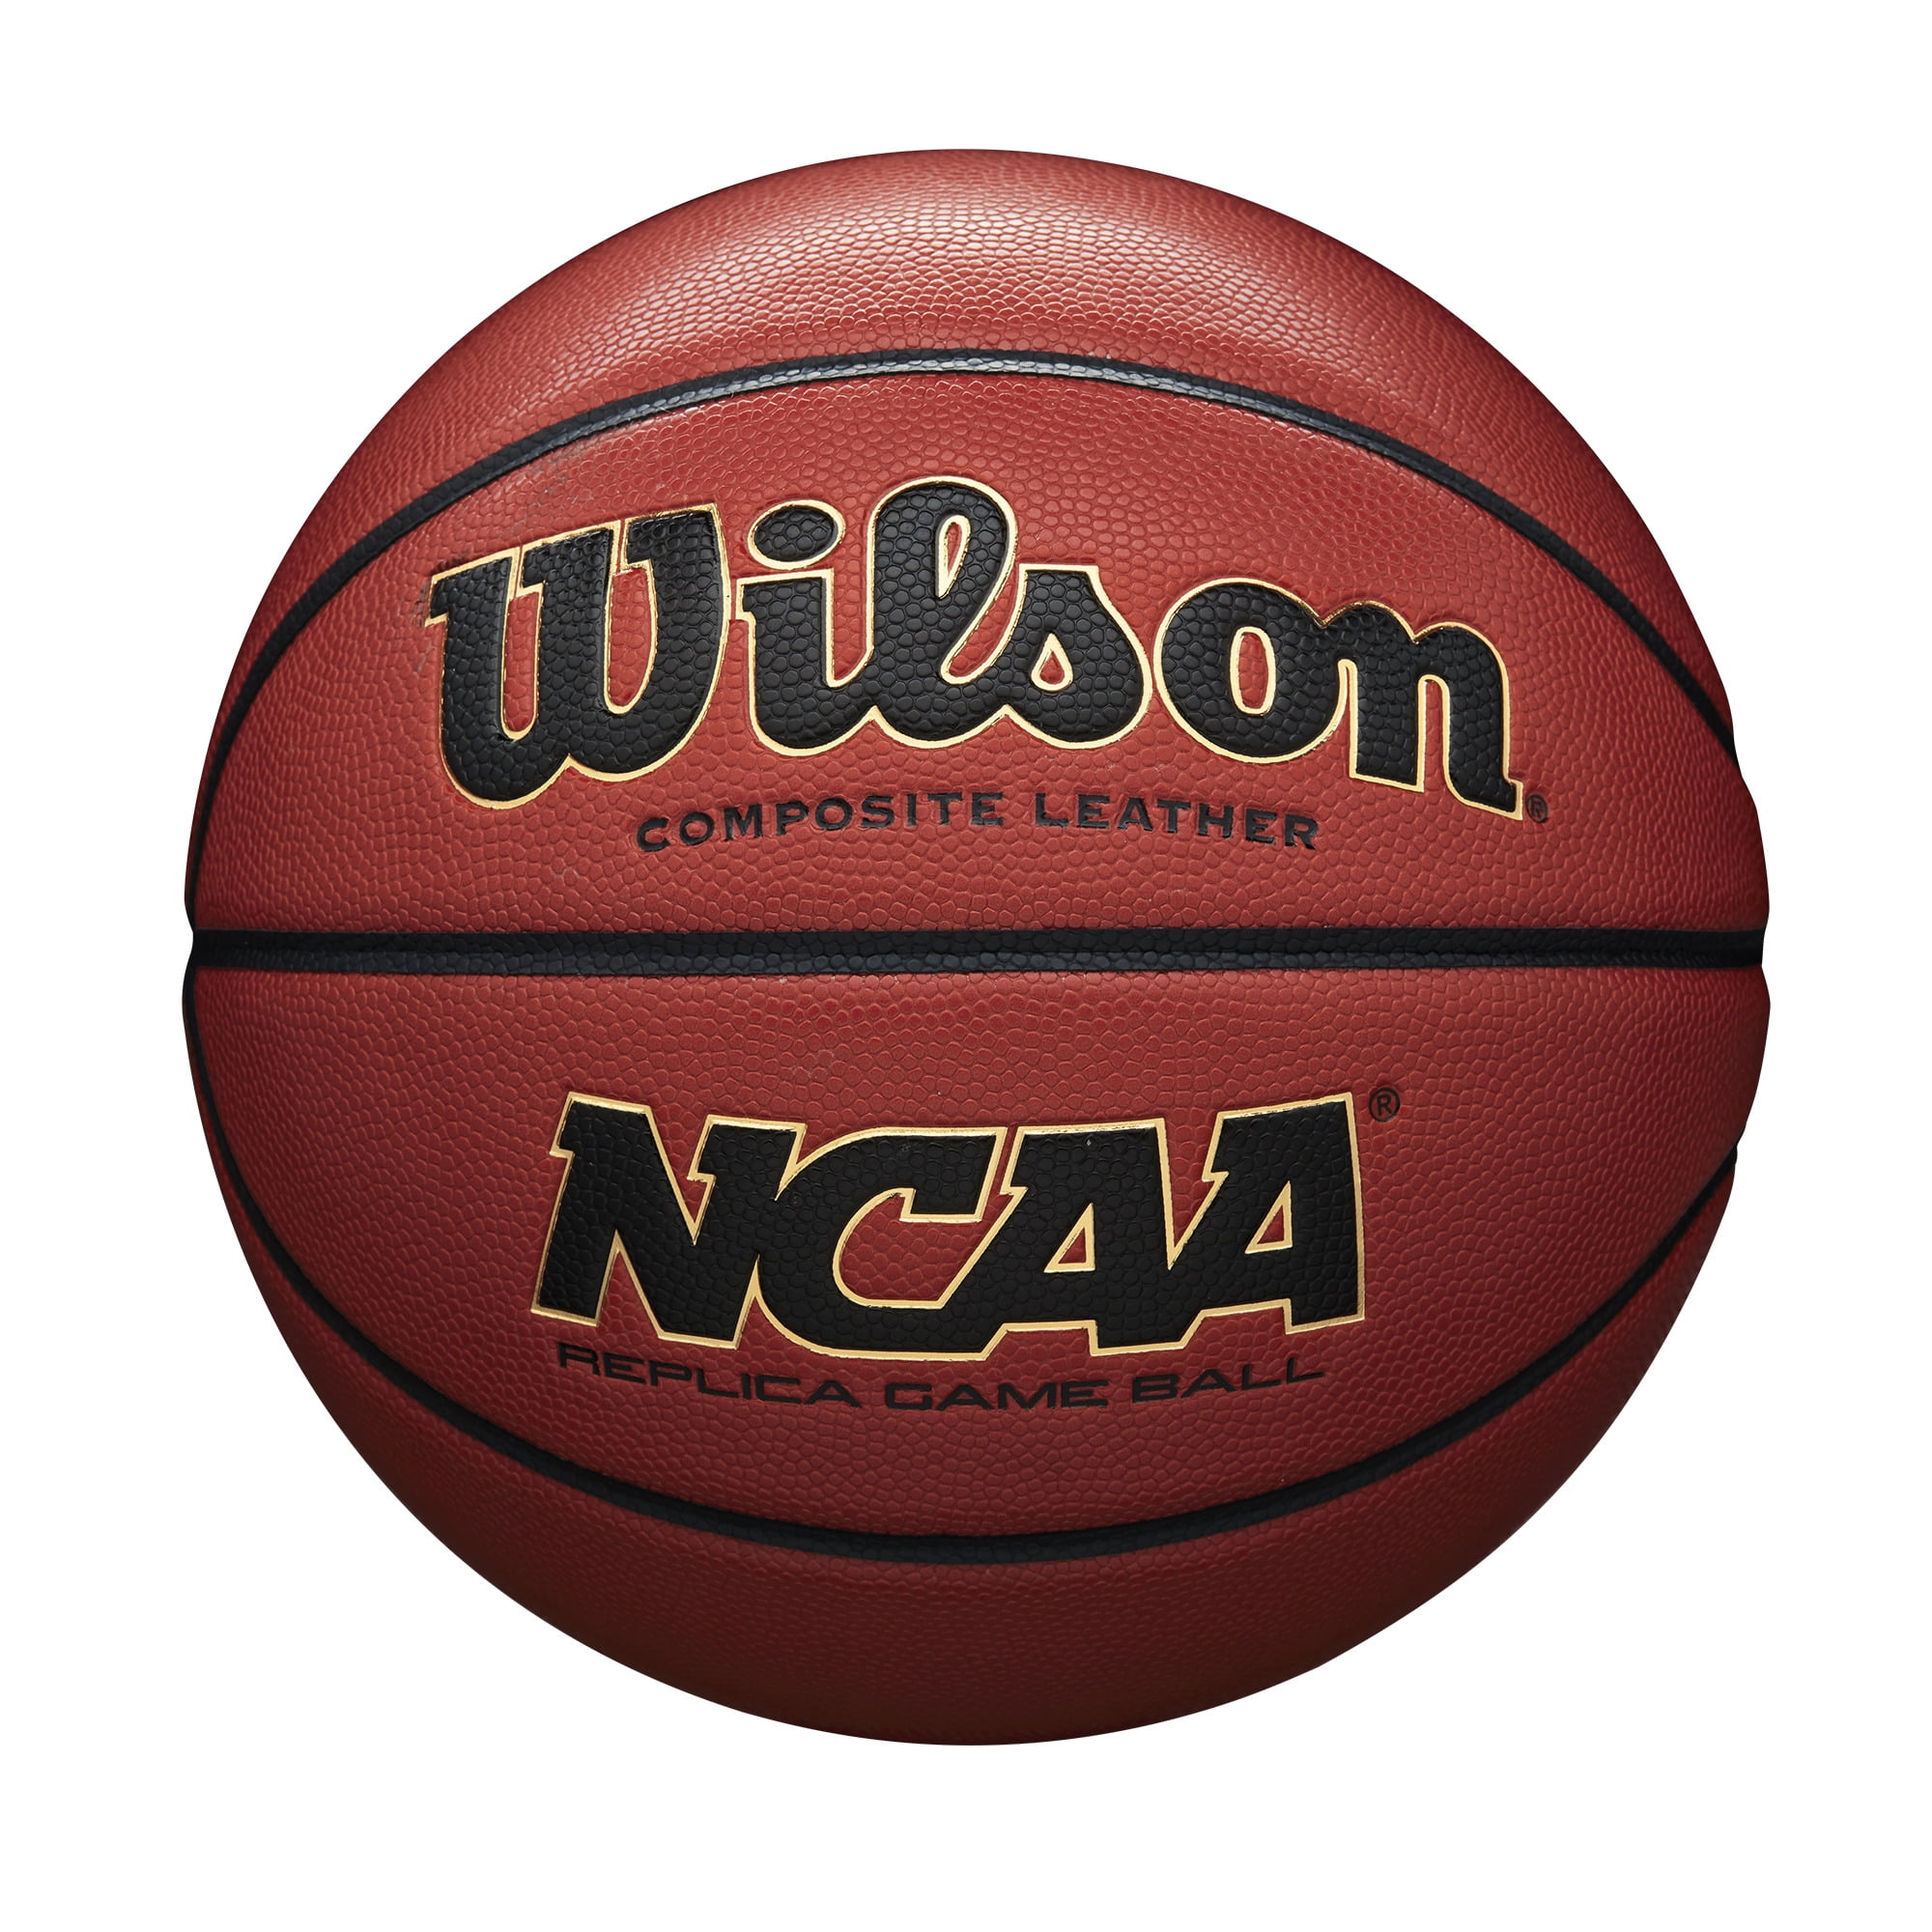 Wilson NCAA Replica Game Basketball, Official Size - 29.5